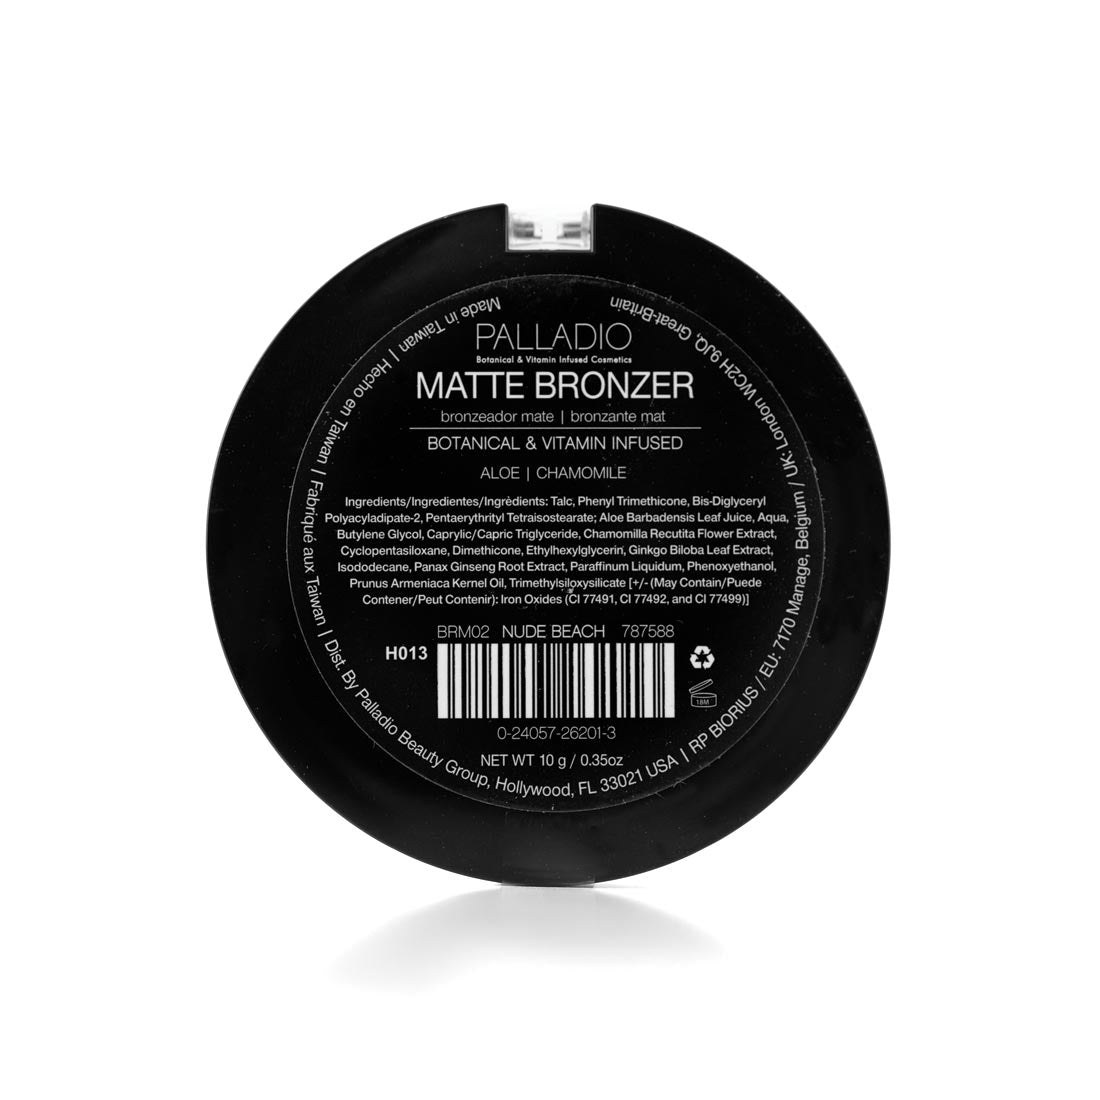 MATTE BRONZER